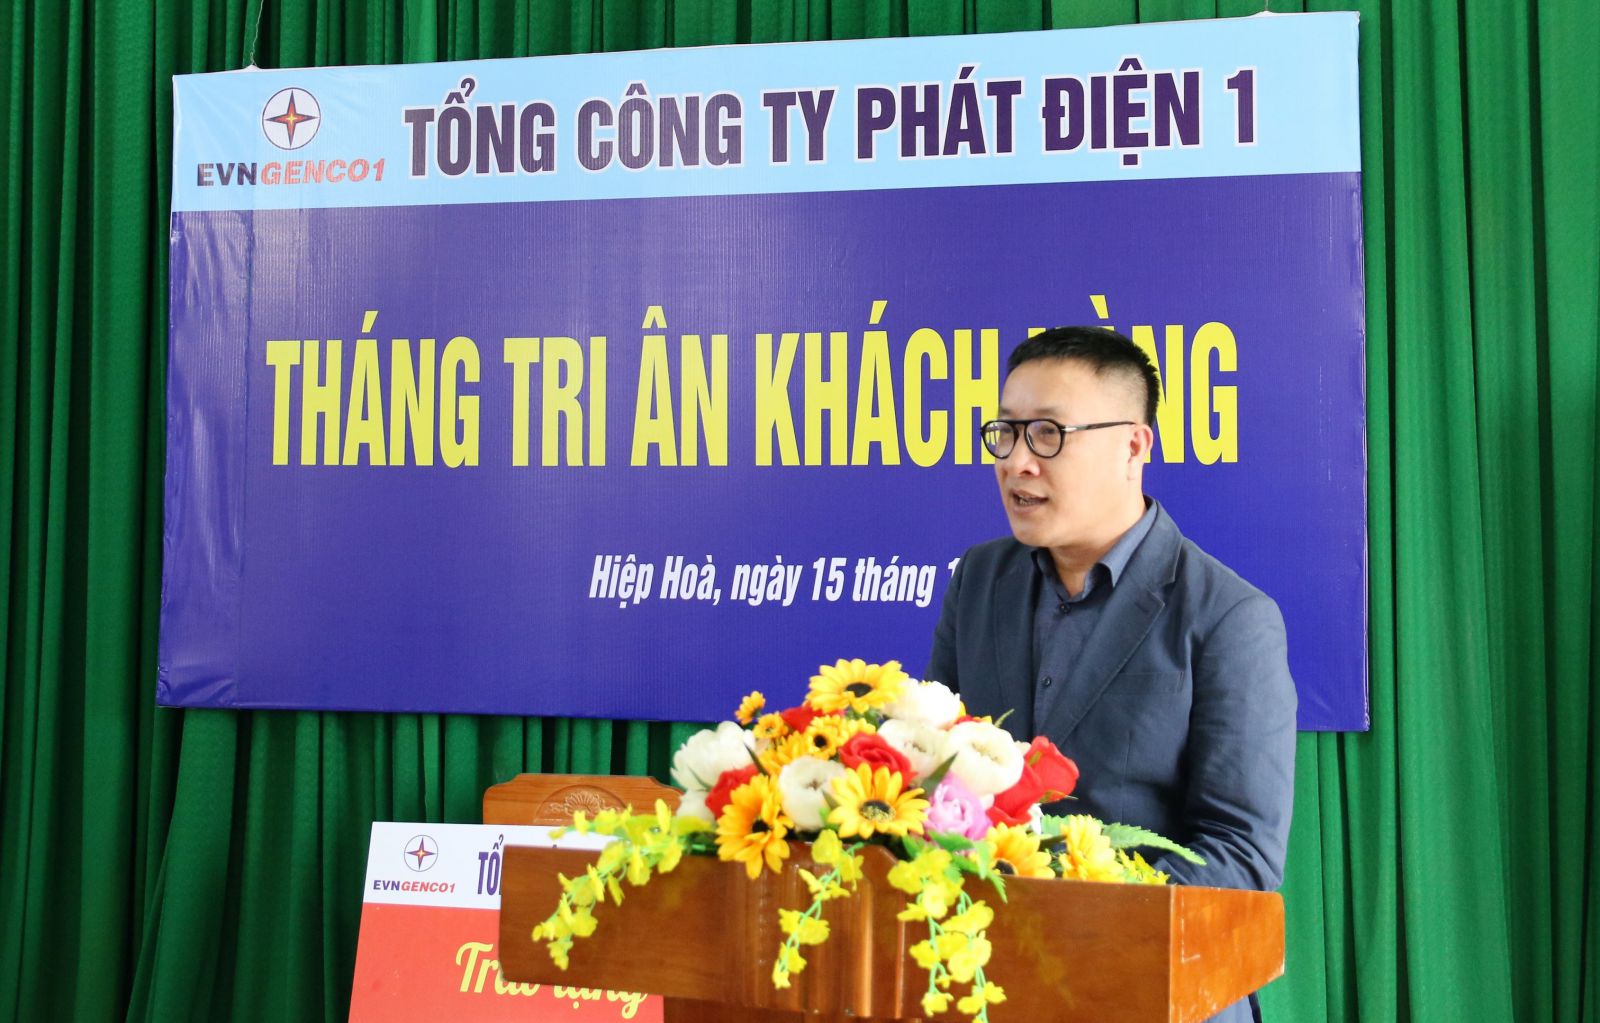 Ông Nguyễn Mạnh Huấn, Phó Tổng giám đốc Tổng công ty Phát điện 1 phát biểu tại buổi trao tặng